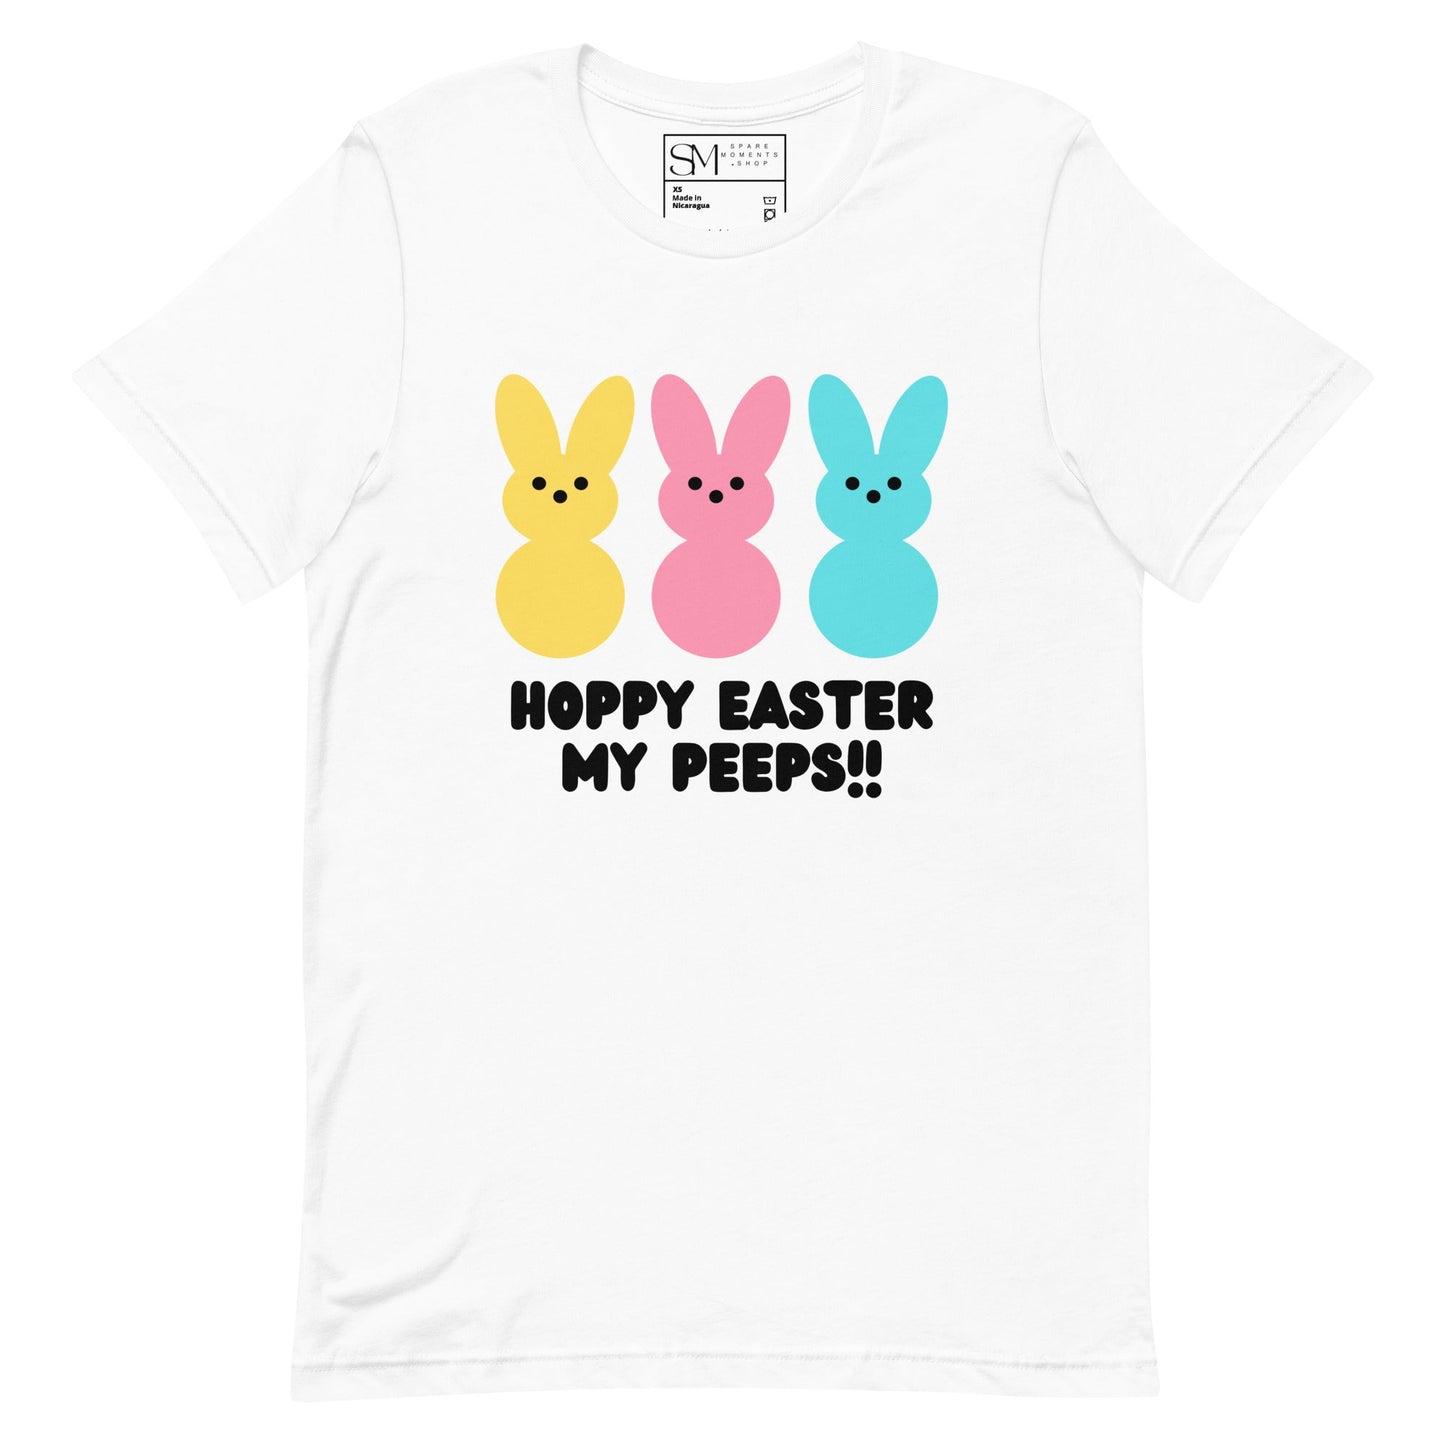 Hoppy Easter My Peeps! | Unisex t-shirt